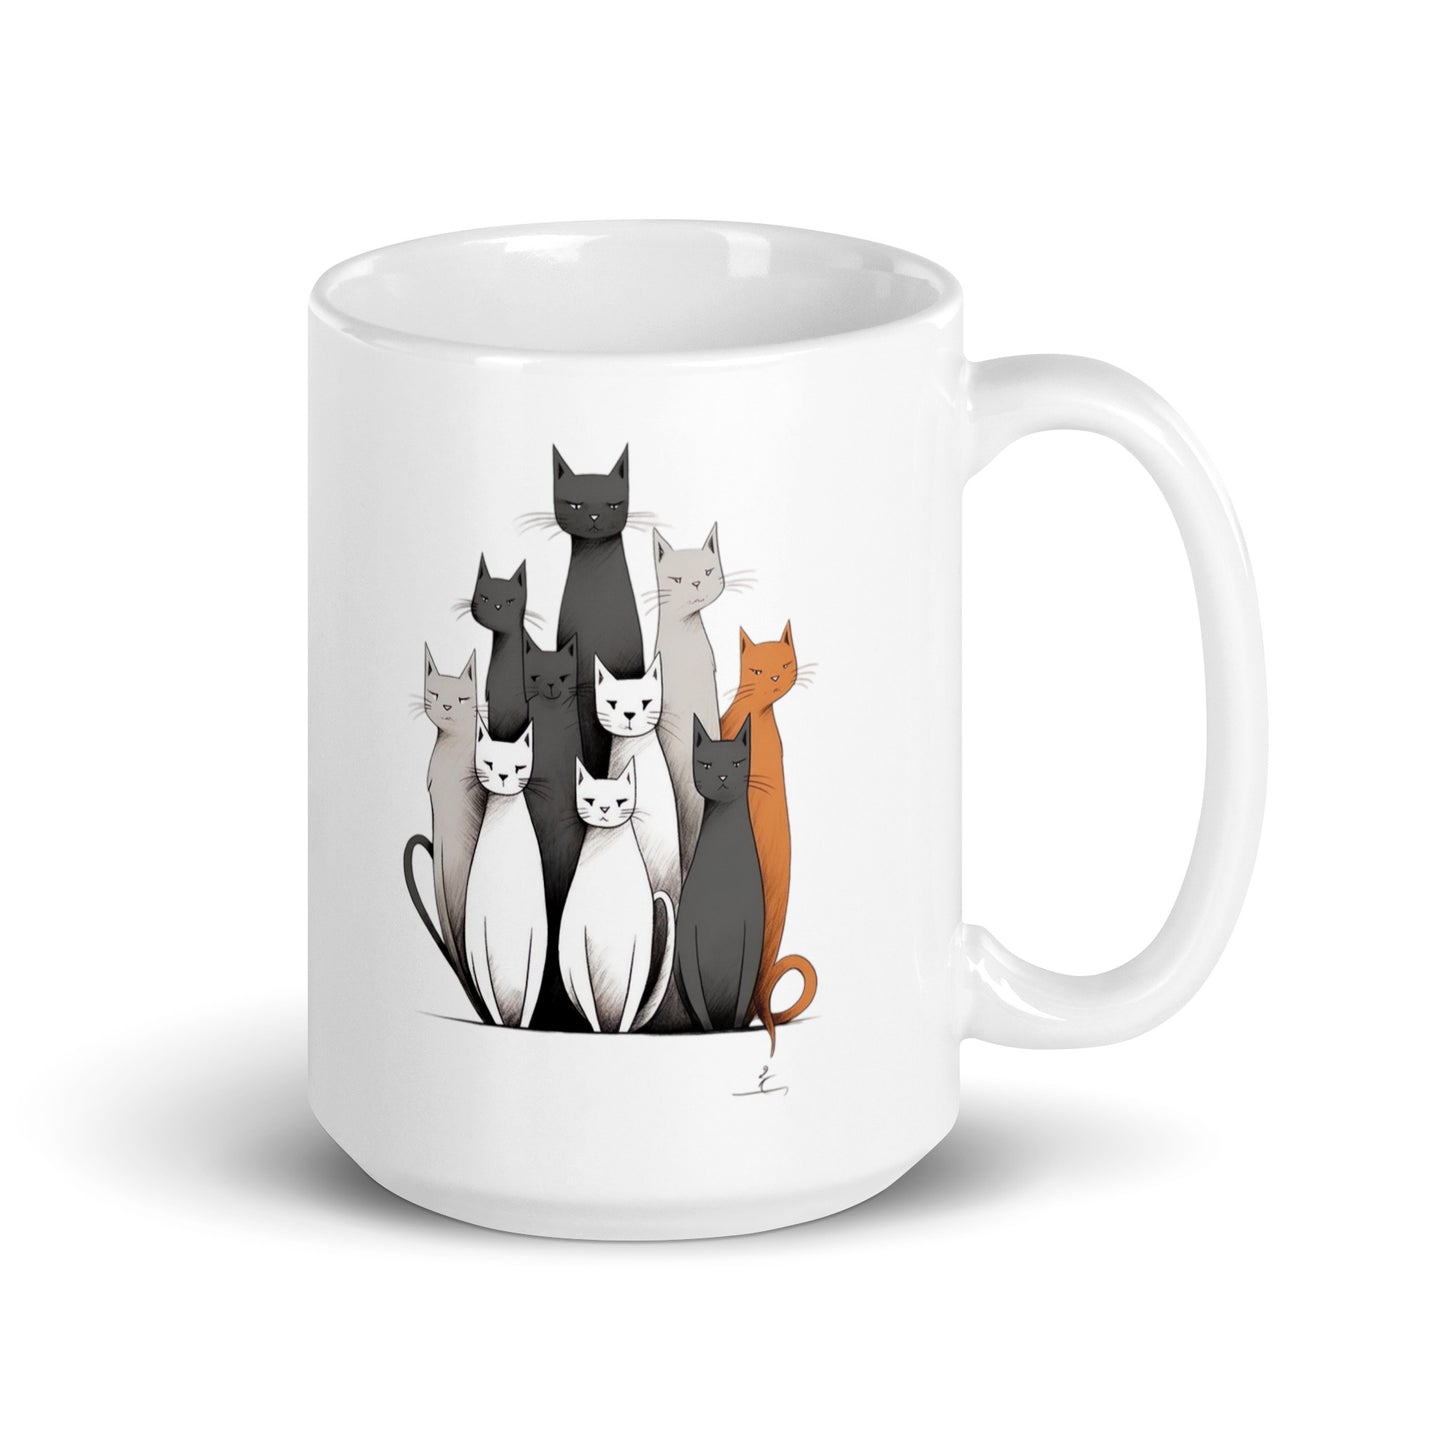 White glossy mug: Cats